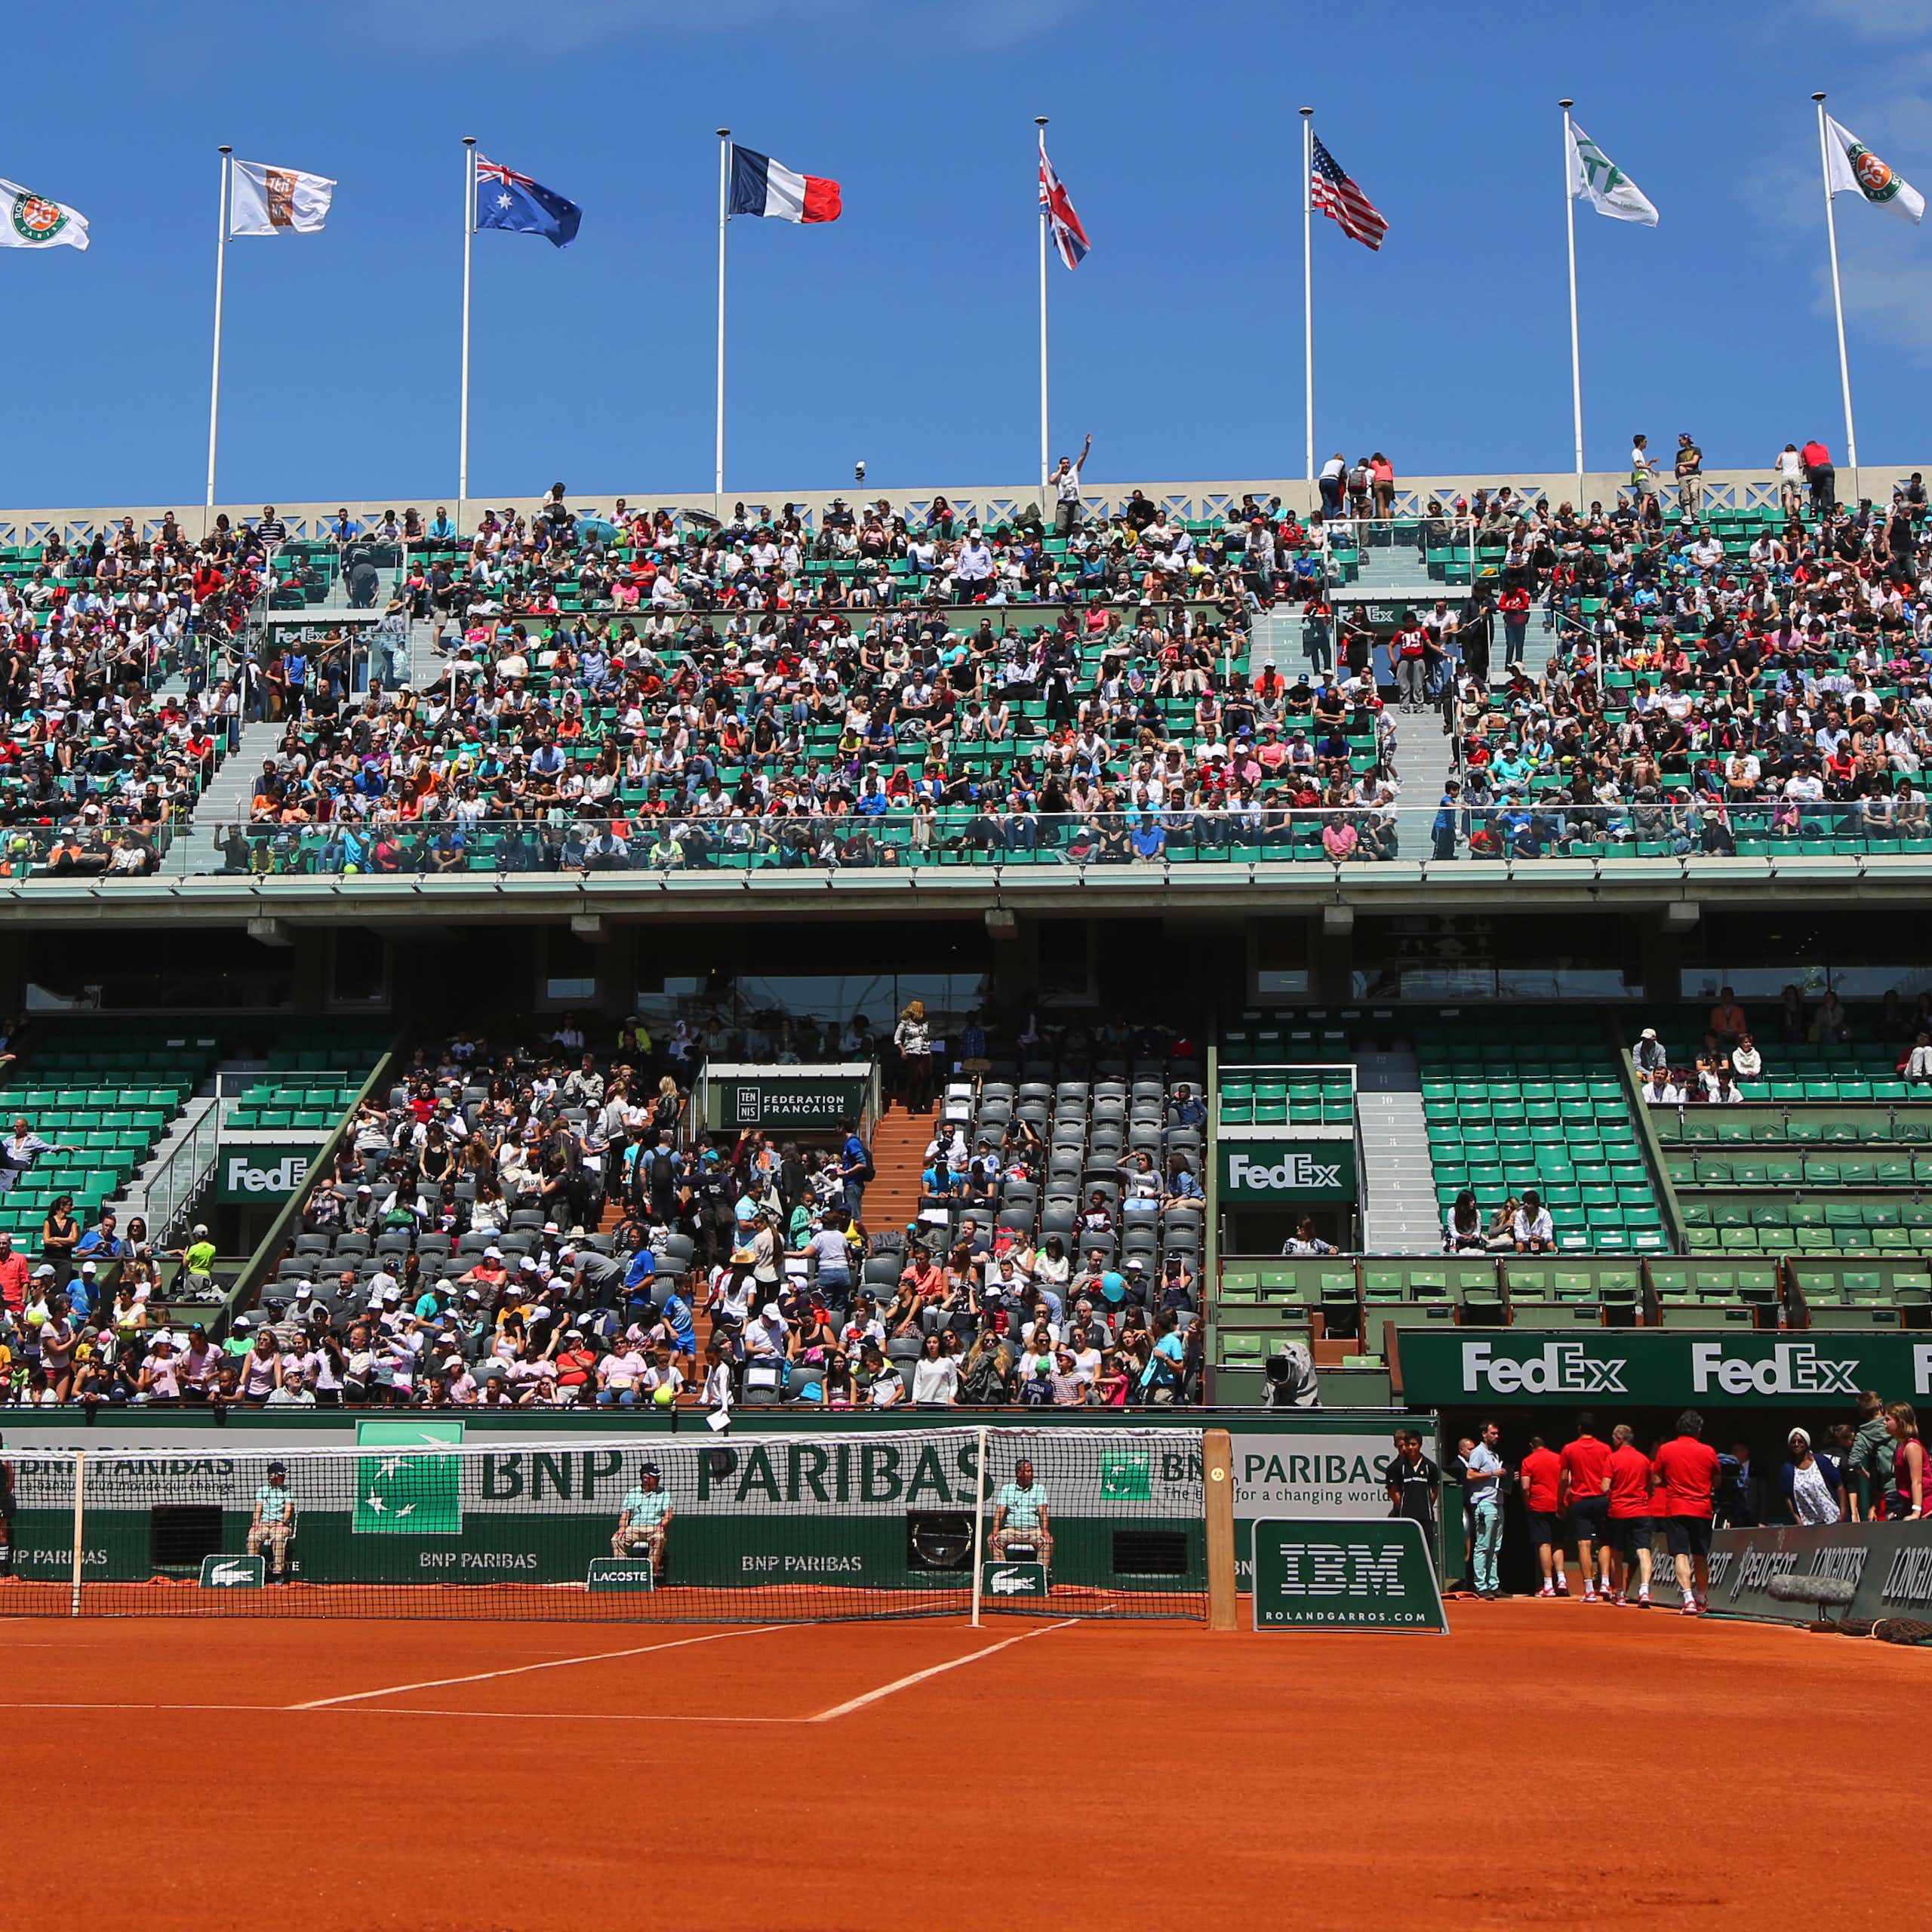 Une vue de Roland Garros (terrain et gradins)